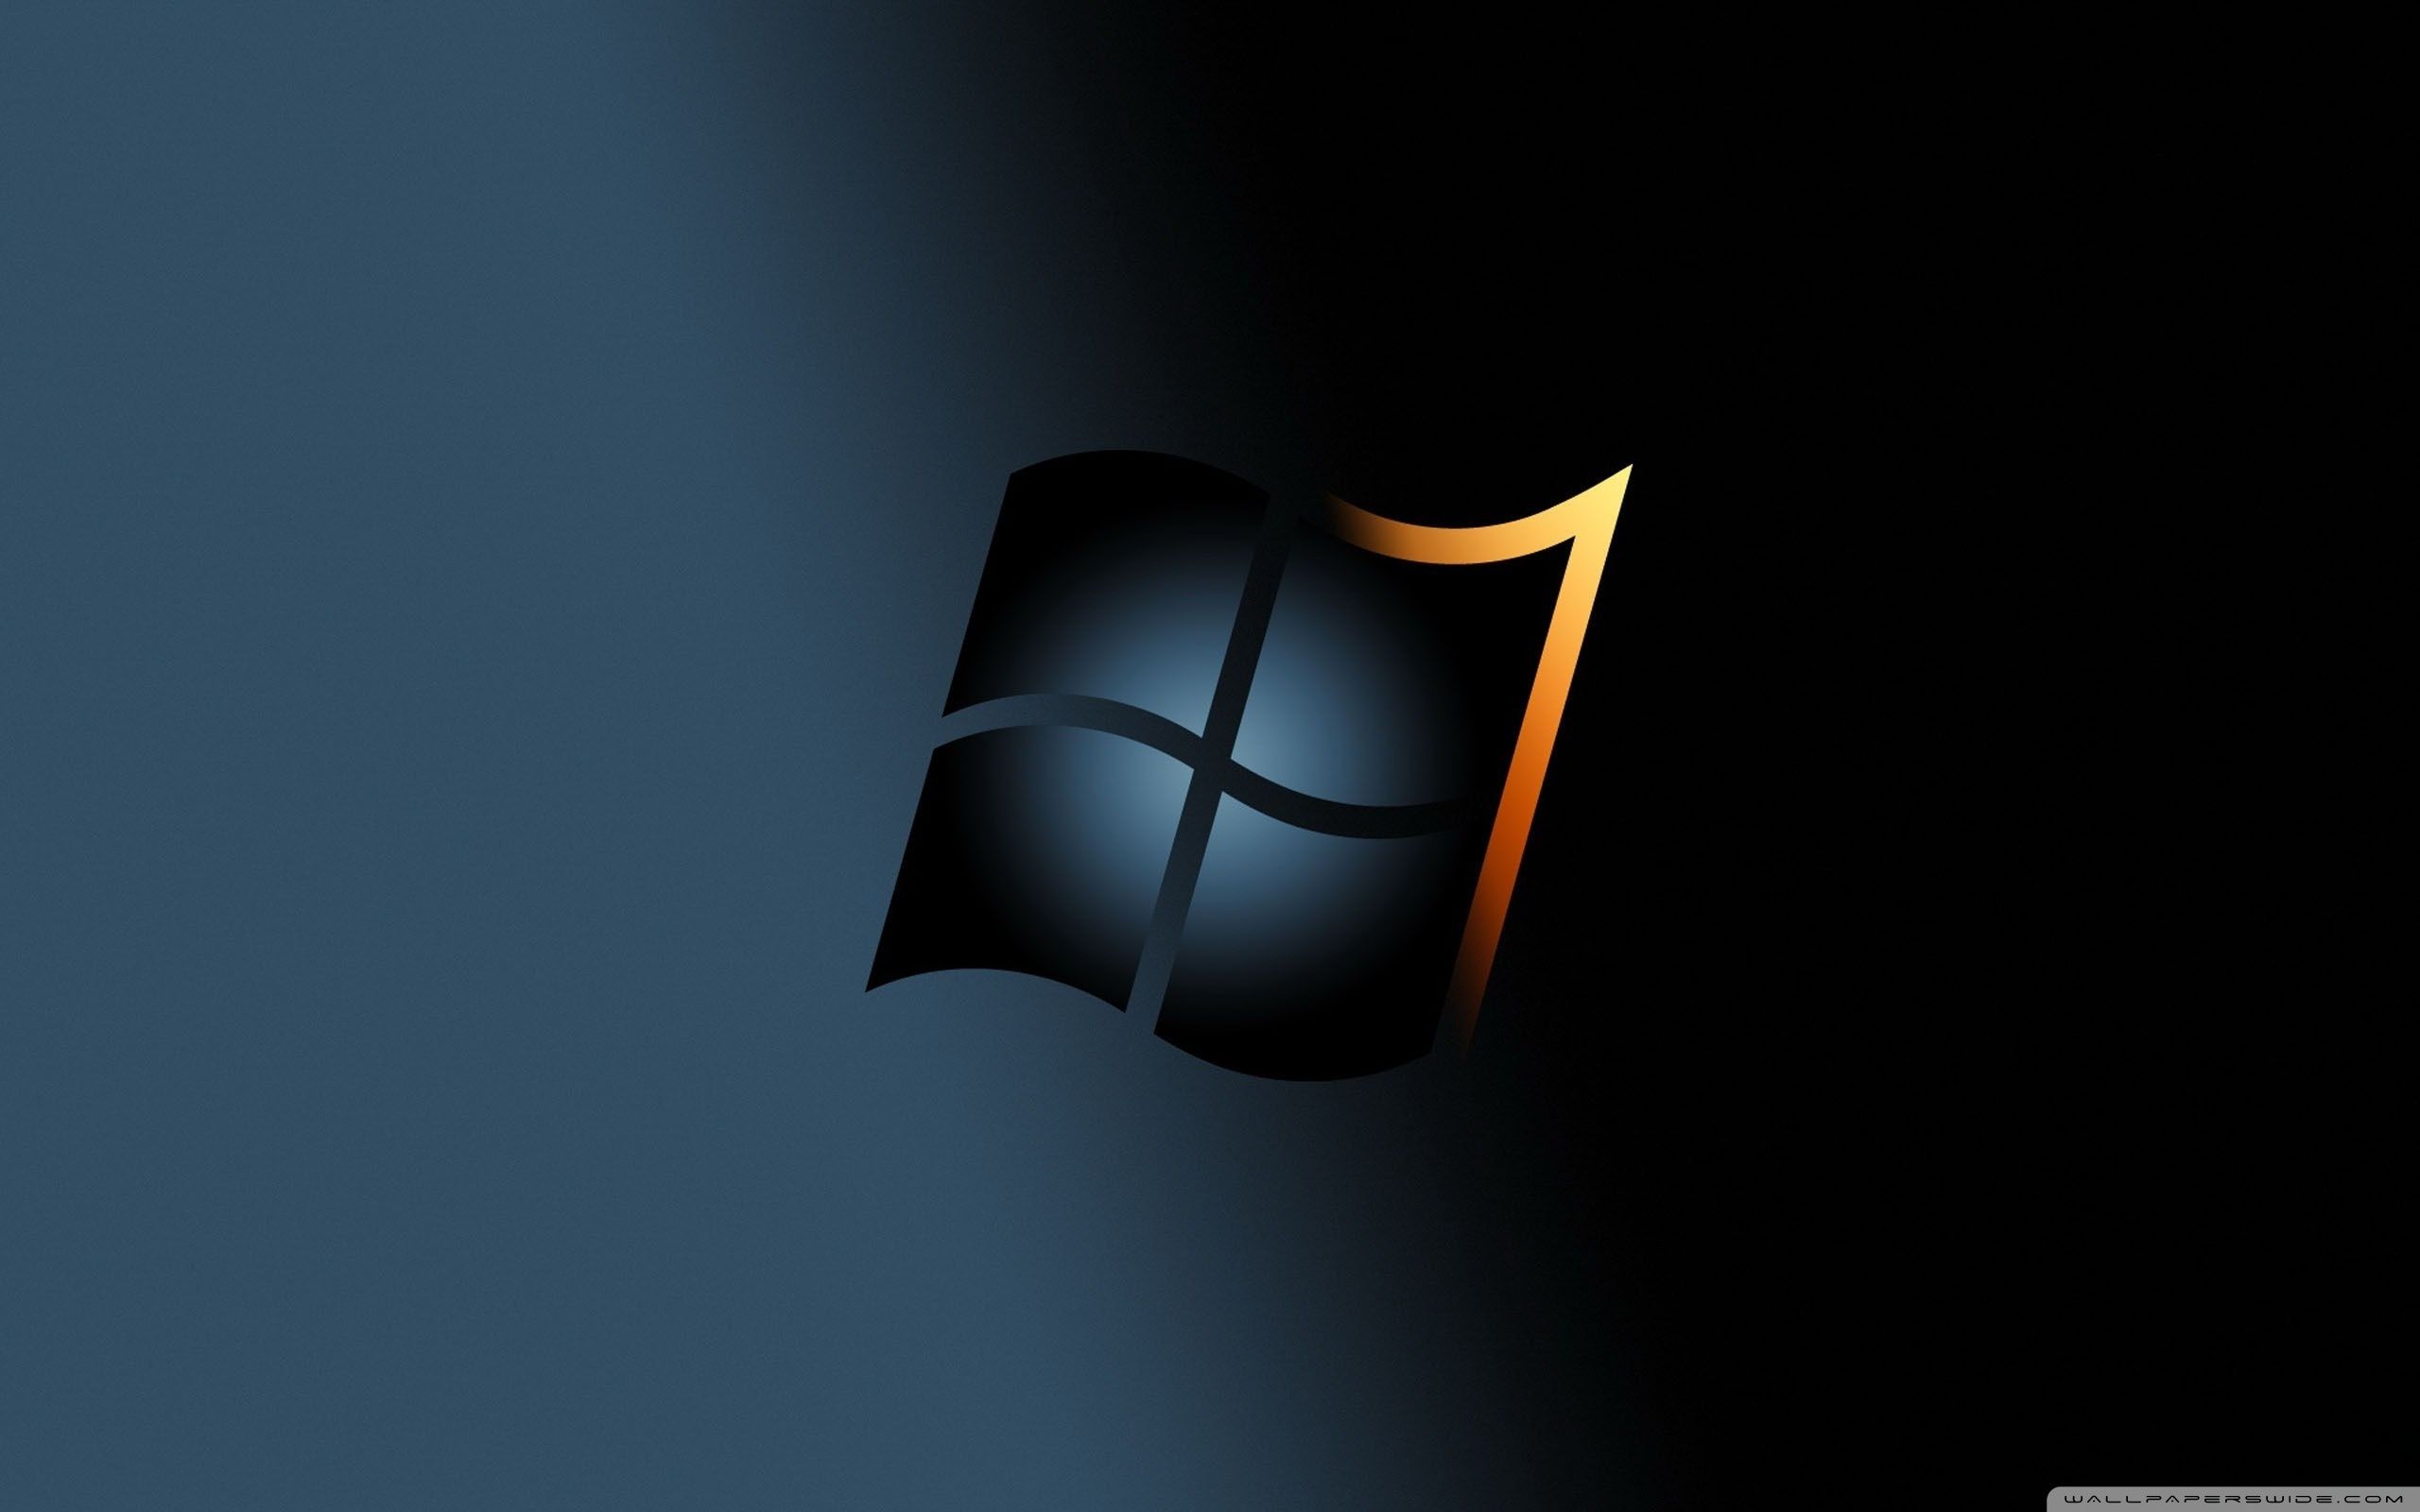 Hình nền Windows 7 là sự kết hợp hoàn hảo giữa hiệu suất và thẩm mỹ. Nếu bạn là một người yêu thích Windows 7, đừng bỏ lỡ hình ảnh liên quan để tìm kiếm những hình nền tuyệt đẹp cho thiết bị của bạn.